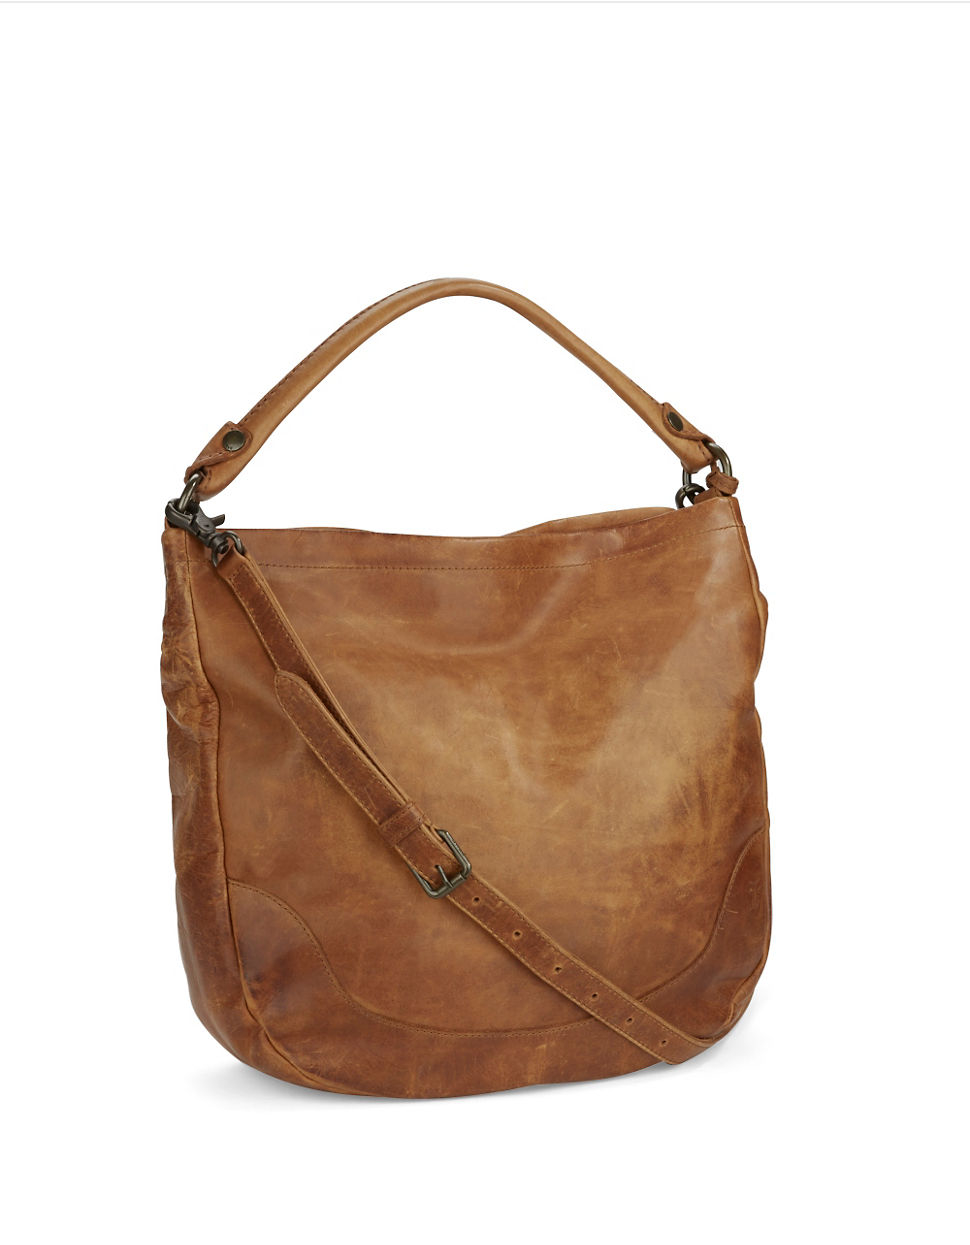 Frye Melissa Leather Hobo Bag in Brown (Cognac) | Lyst